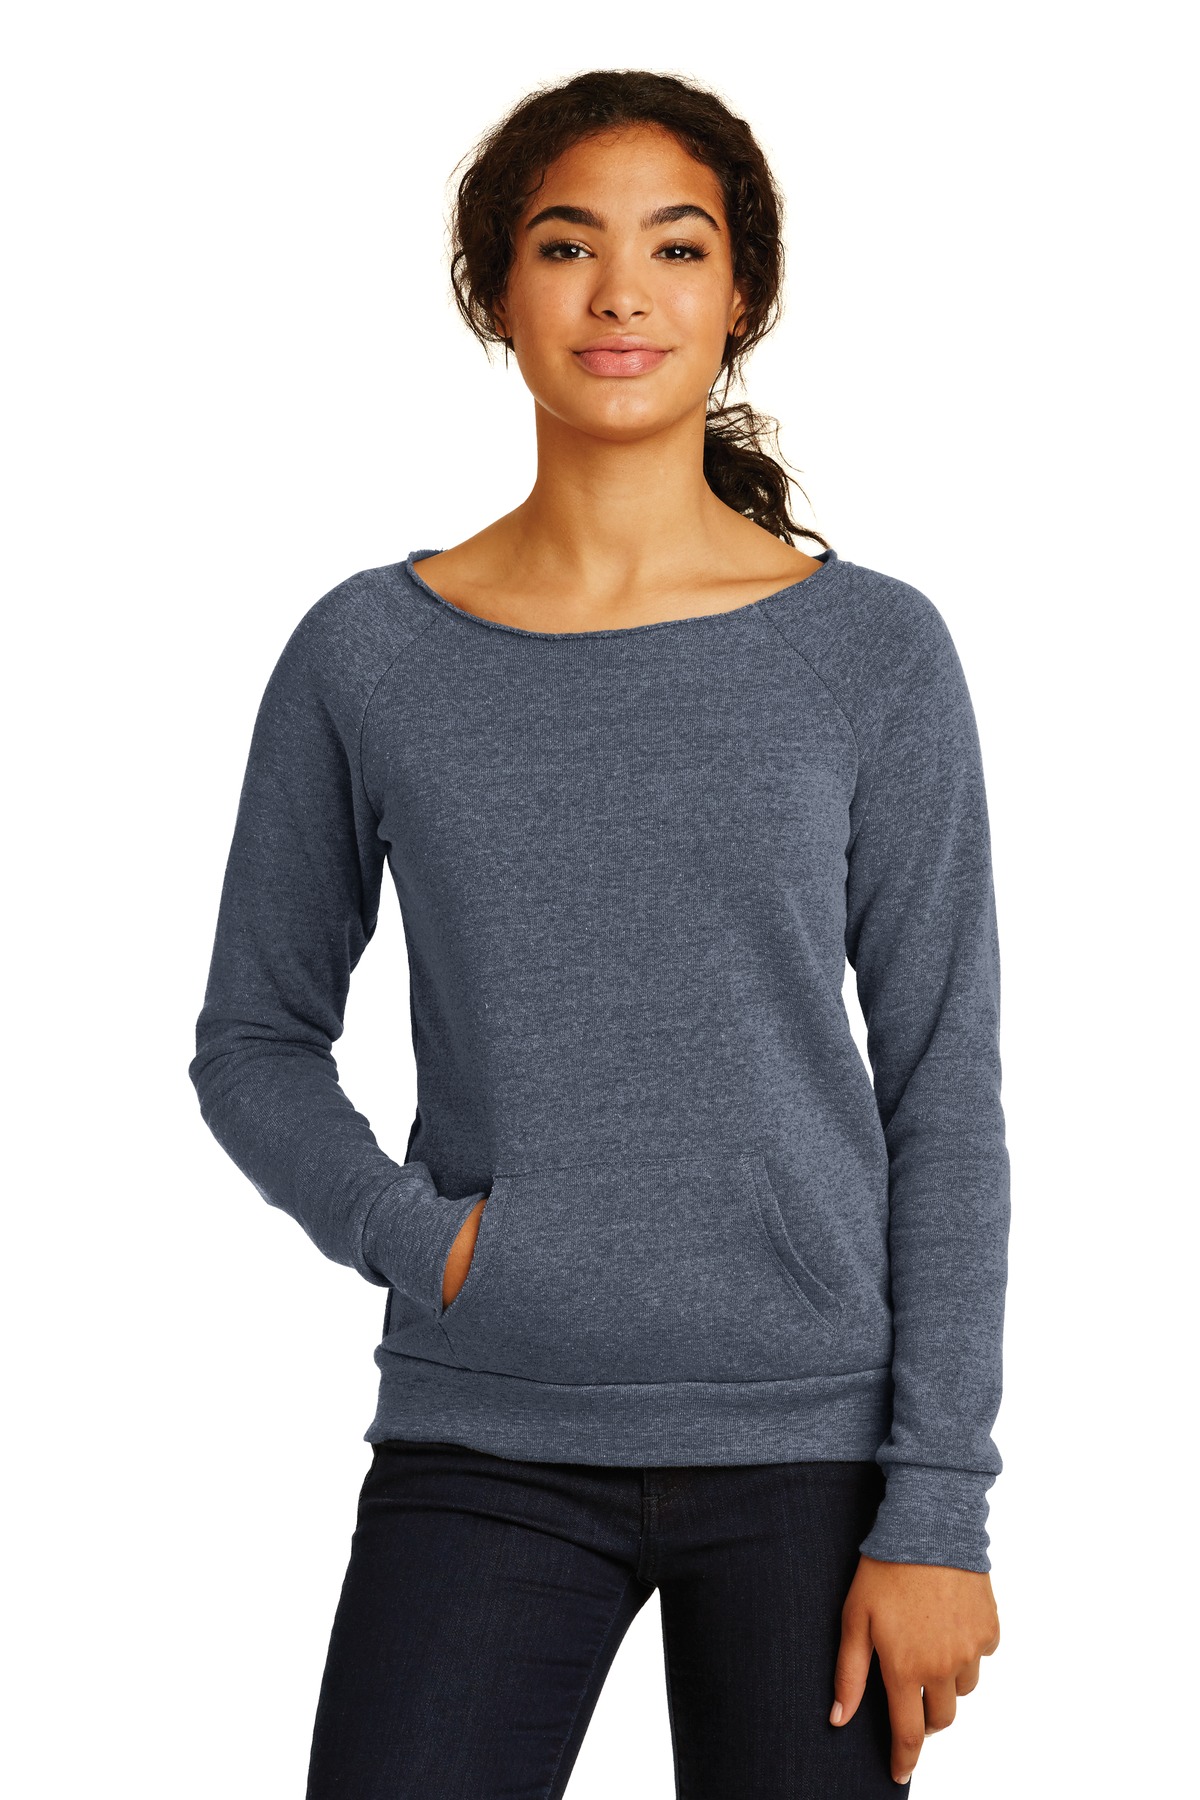 Alternative Embroidered Women's Off the Shoulder Eco-Fleece Sweatshirt 